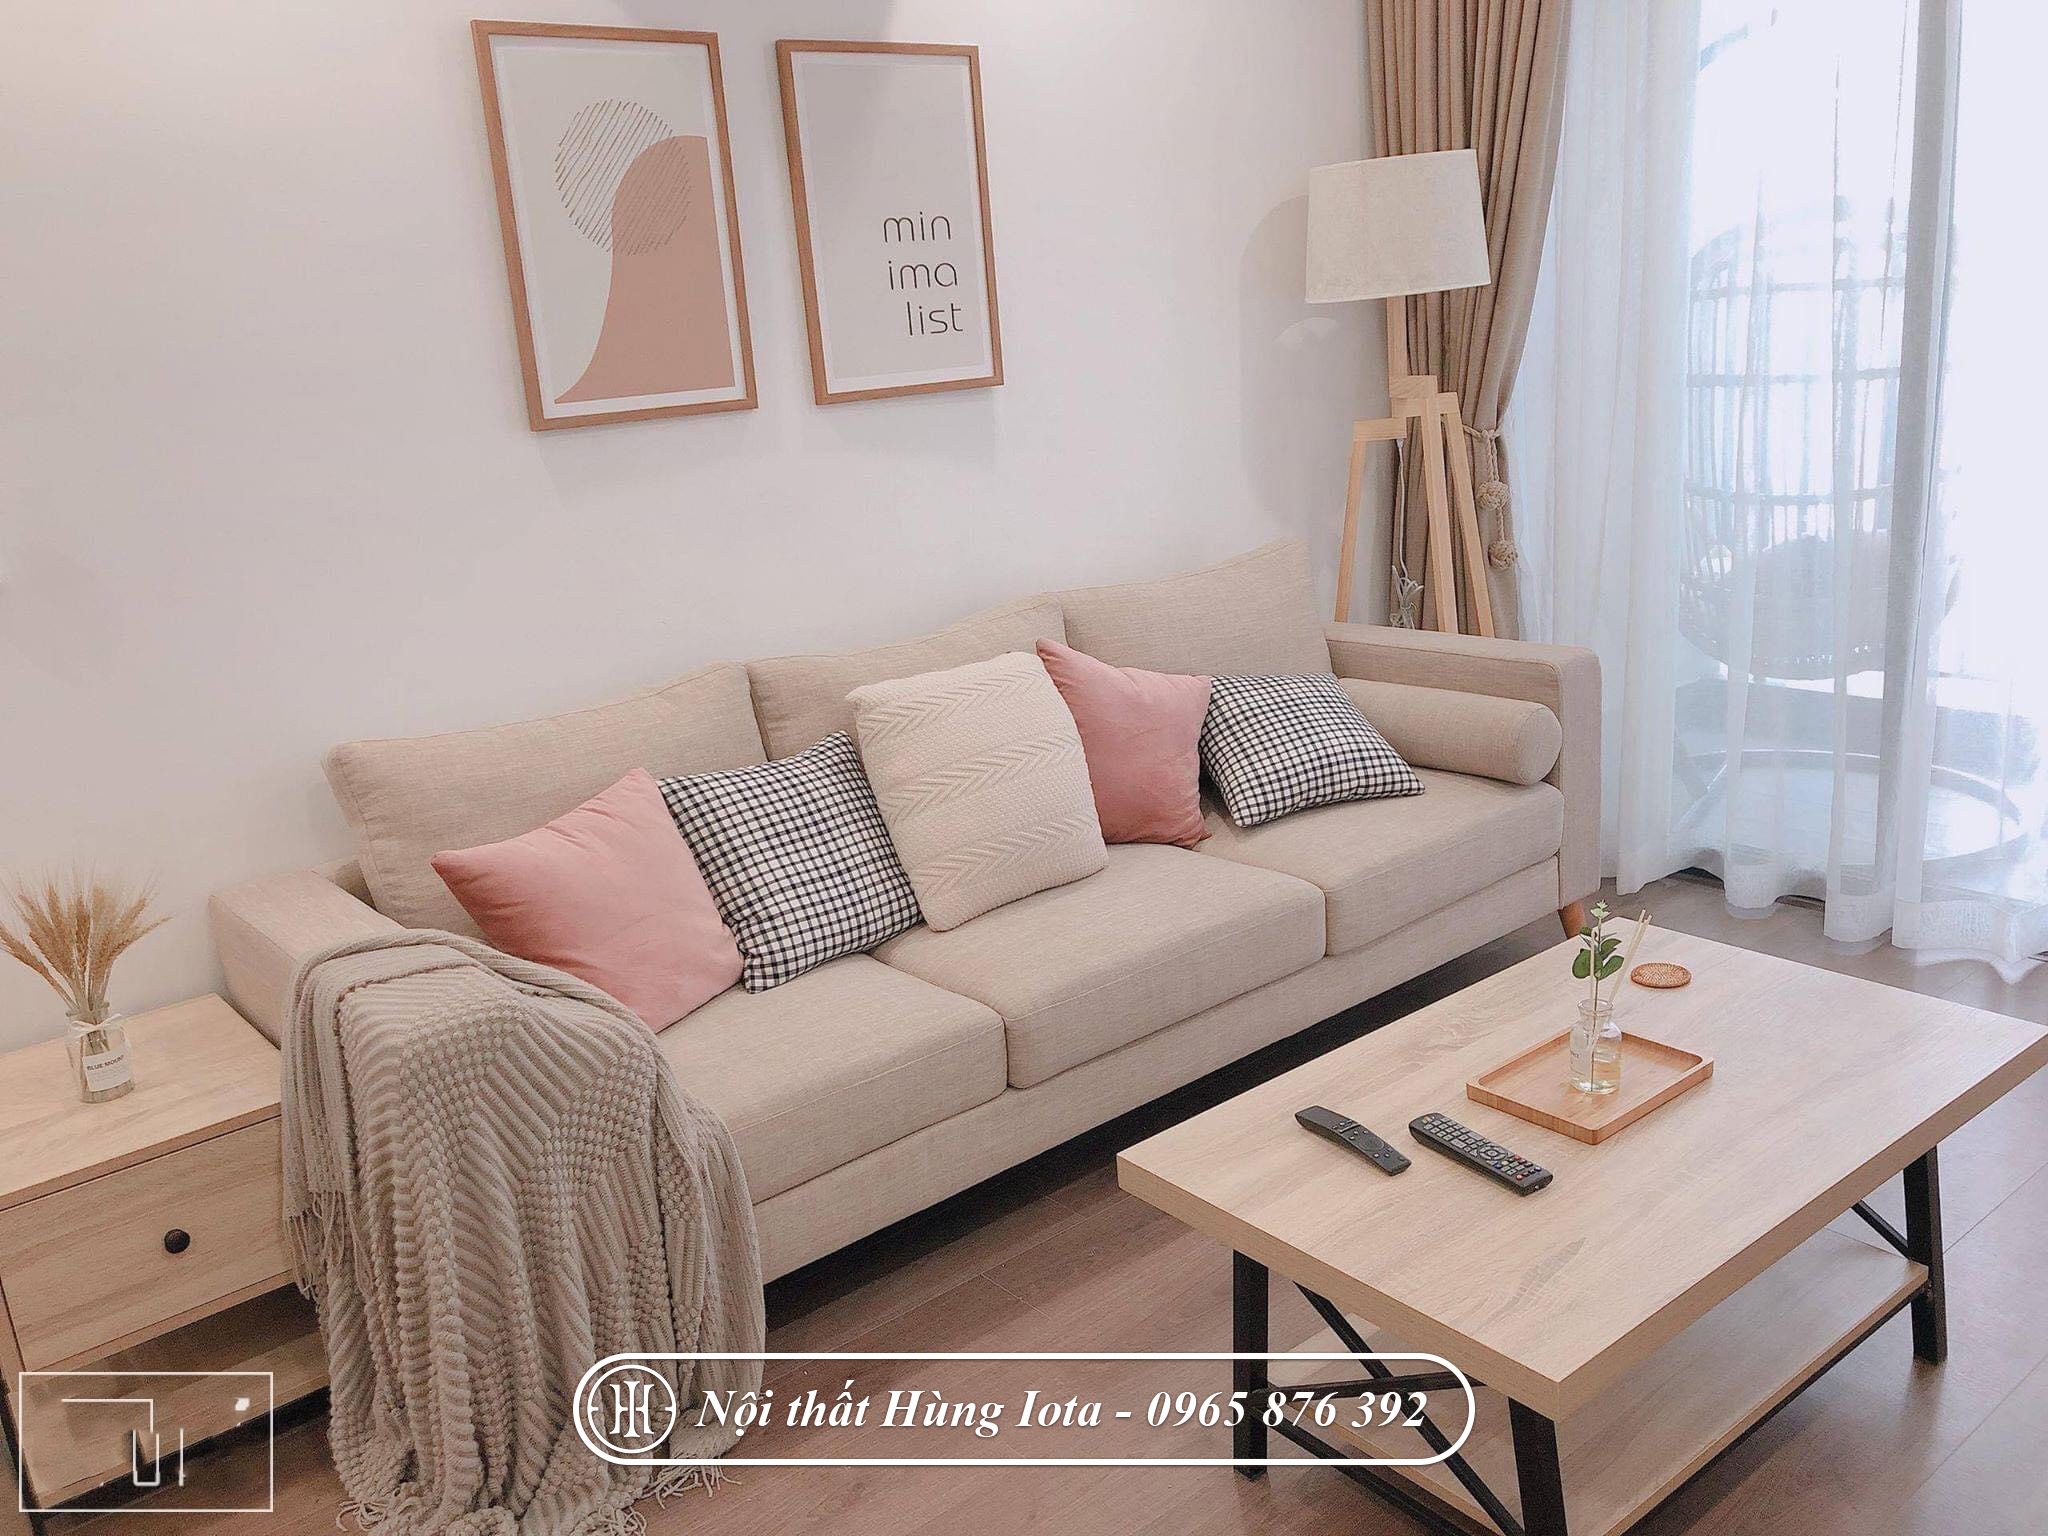 Sofa đơn giản hiện đại màu trắng hồng đẹp cho spa, gia đình chung cư